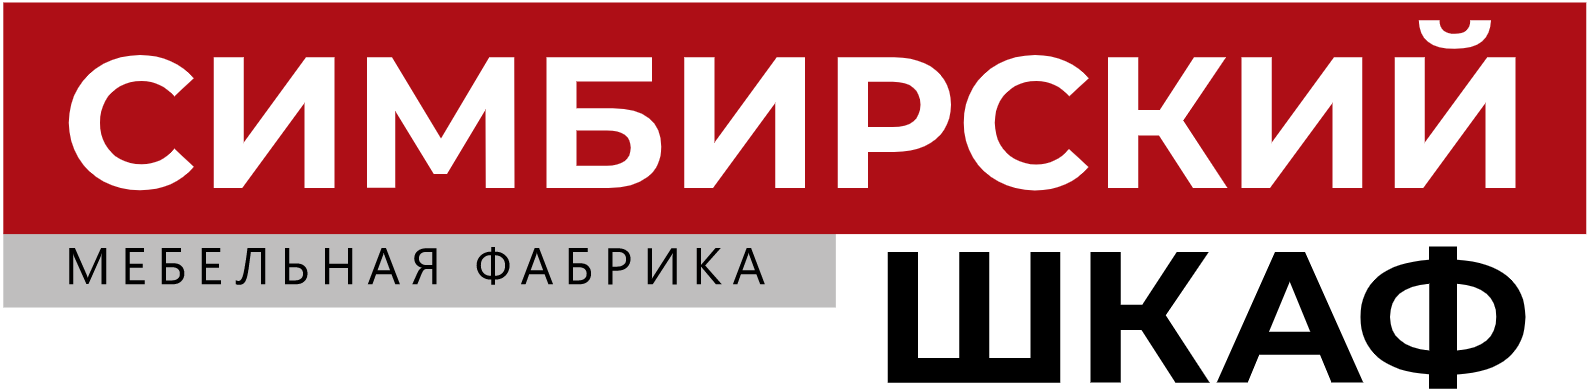 Логотип Симбирский шкаф